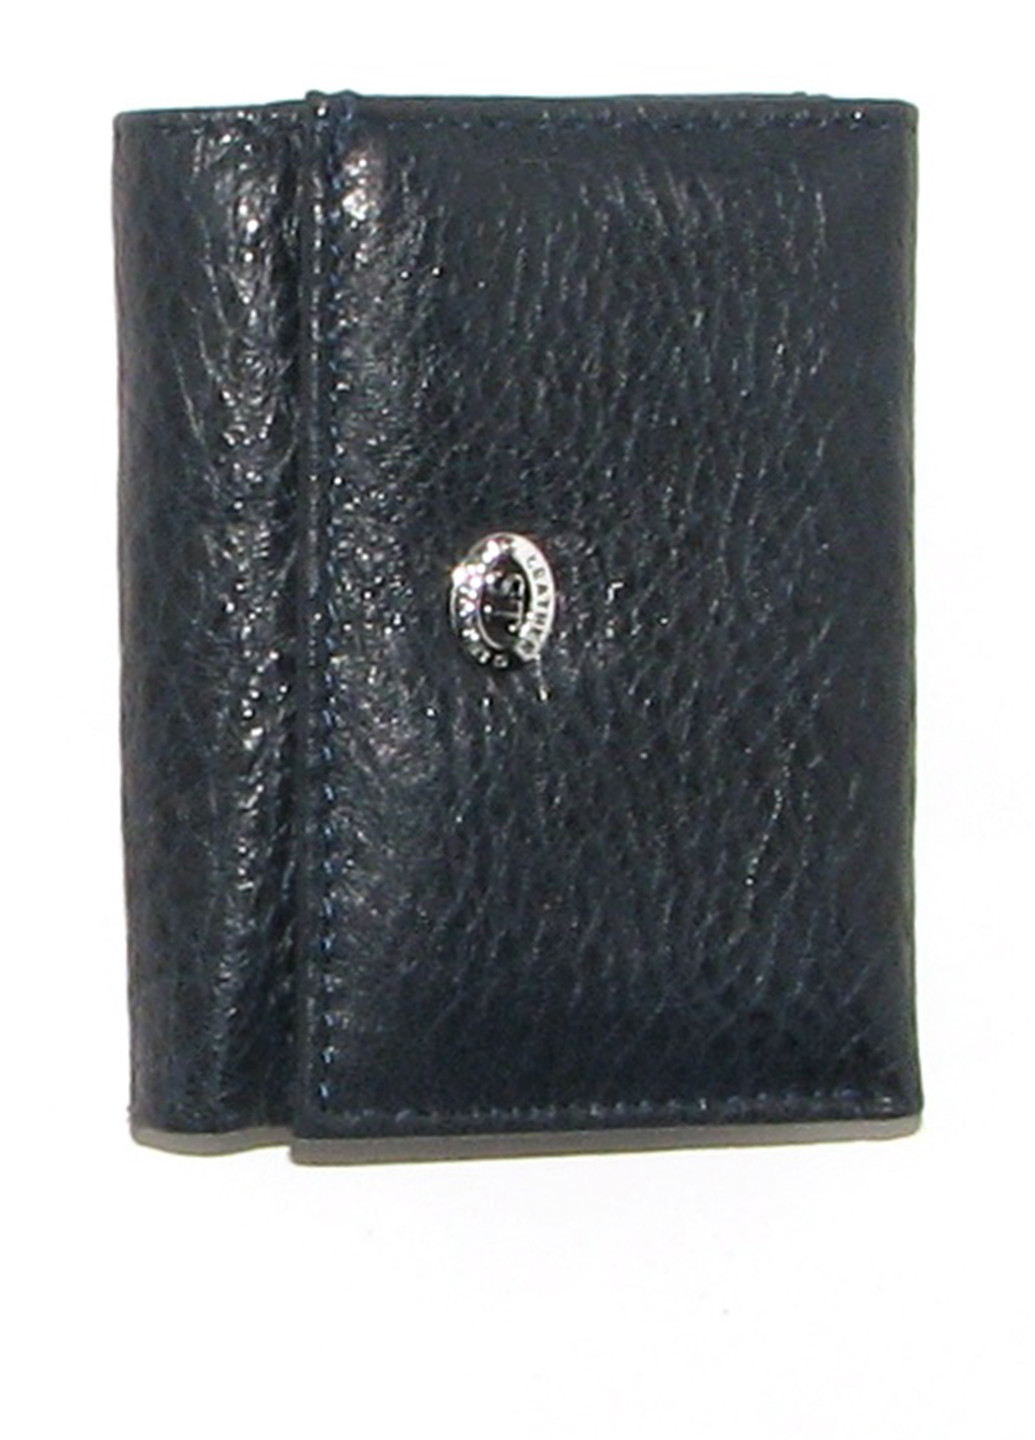 Кошелек ST Leather Accessories (136173488)